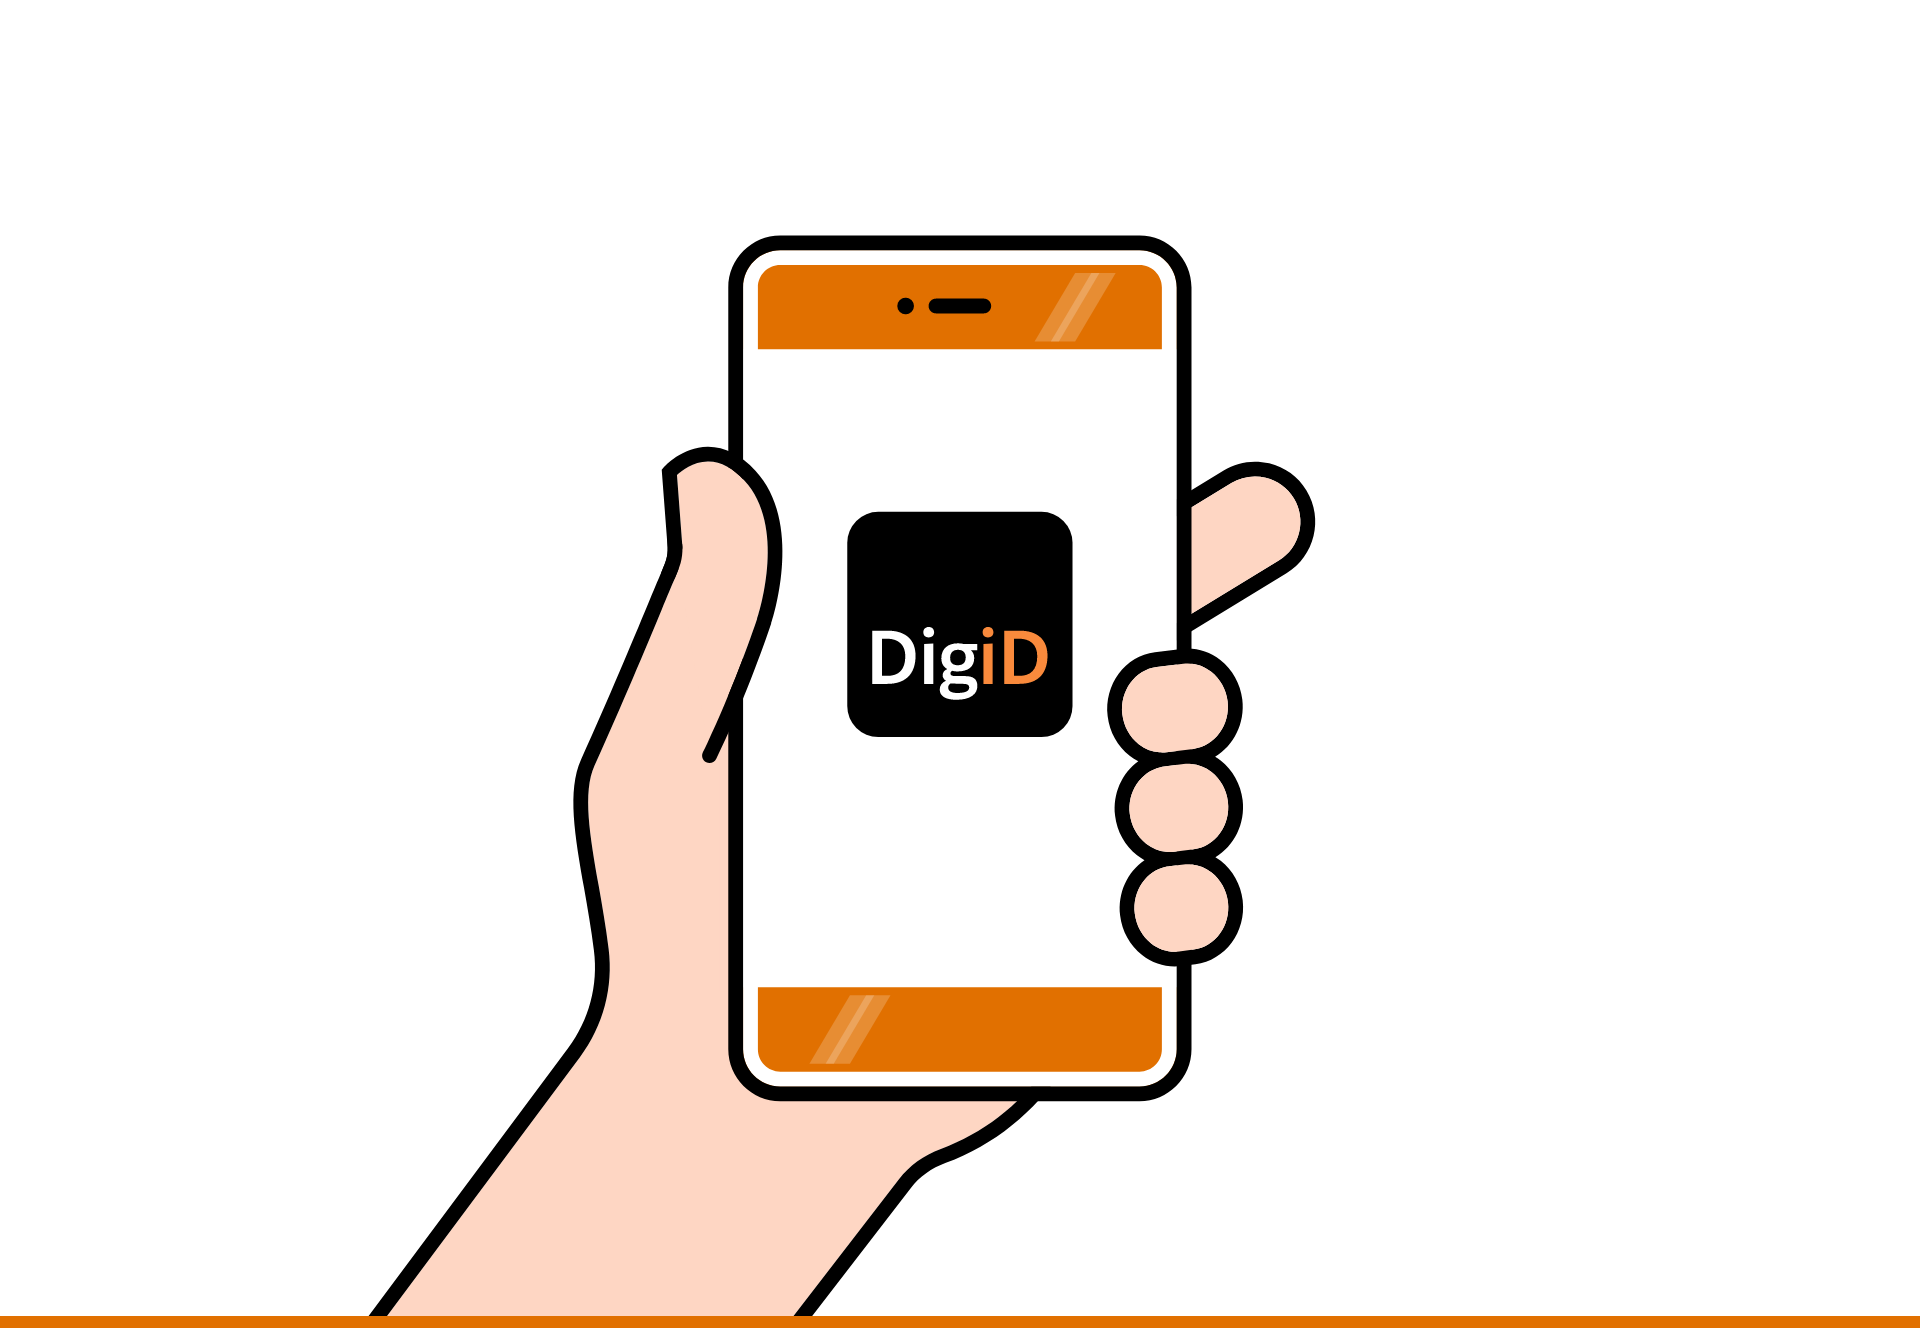 De DigiD app